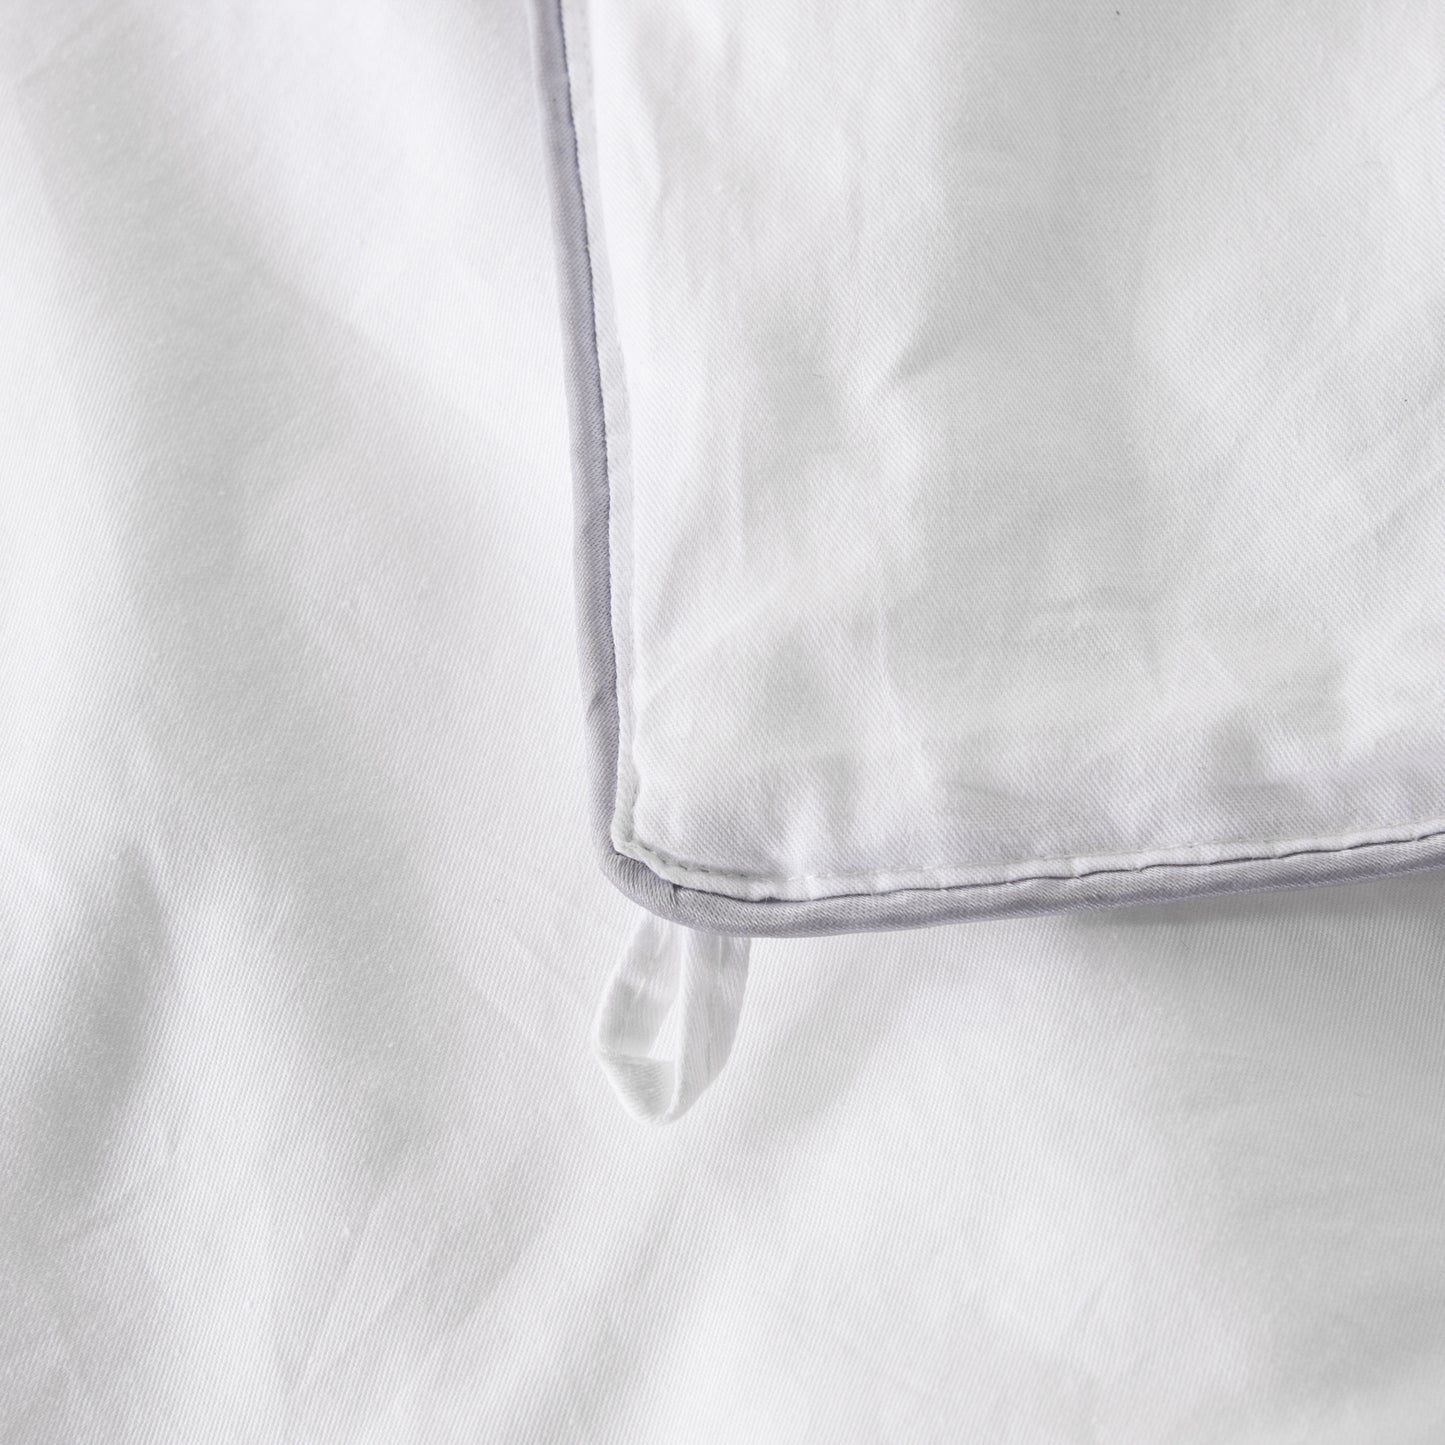 Silk Duvet Insert for bedroom sets king size